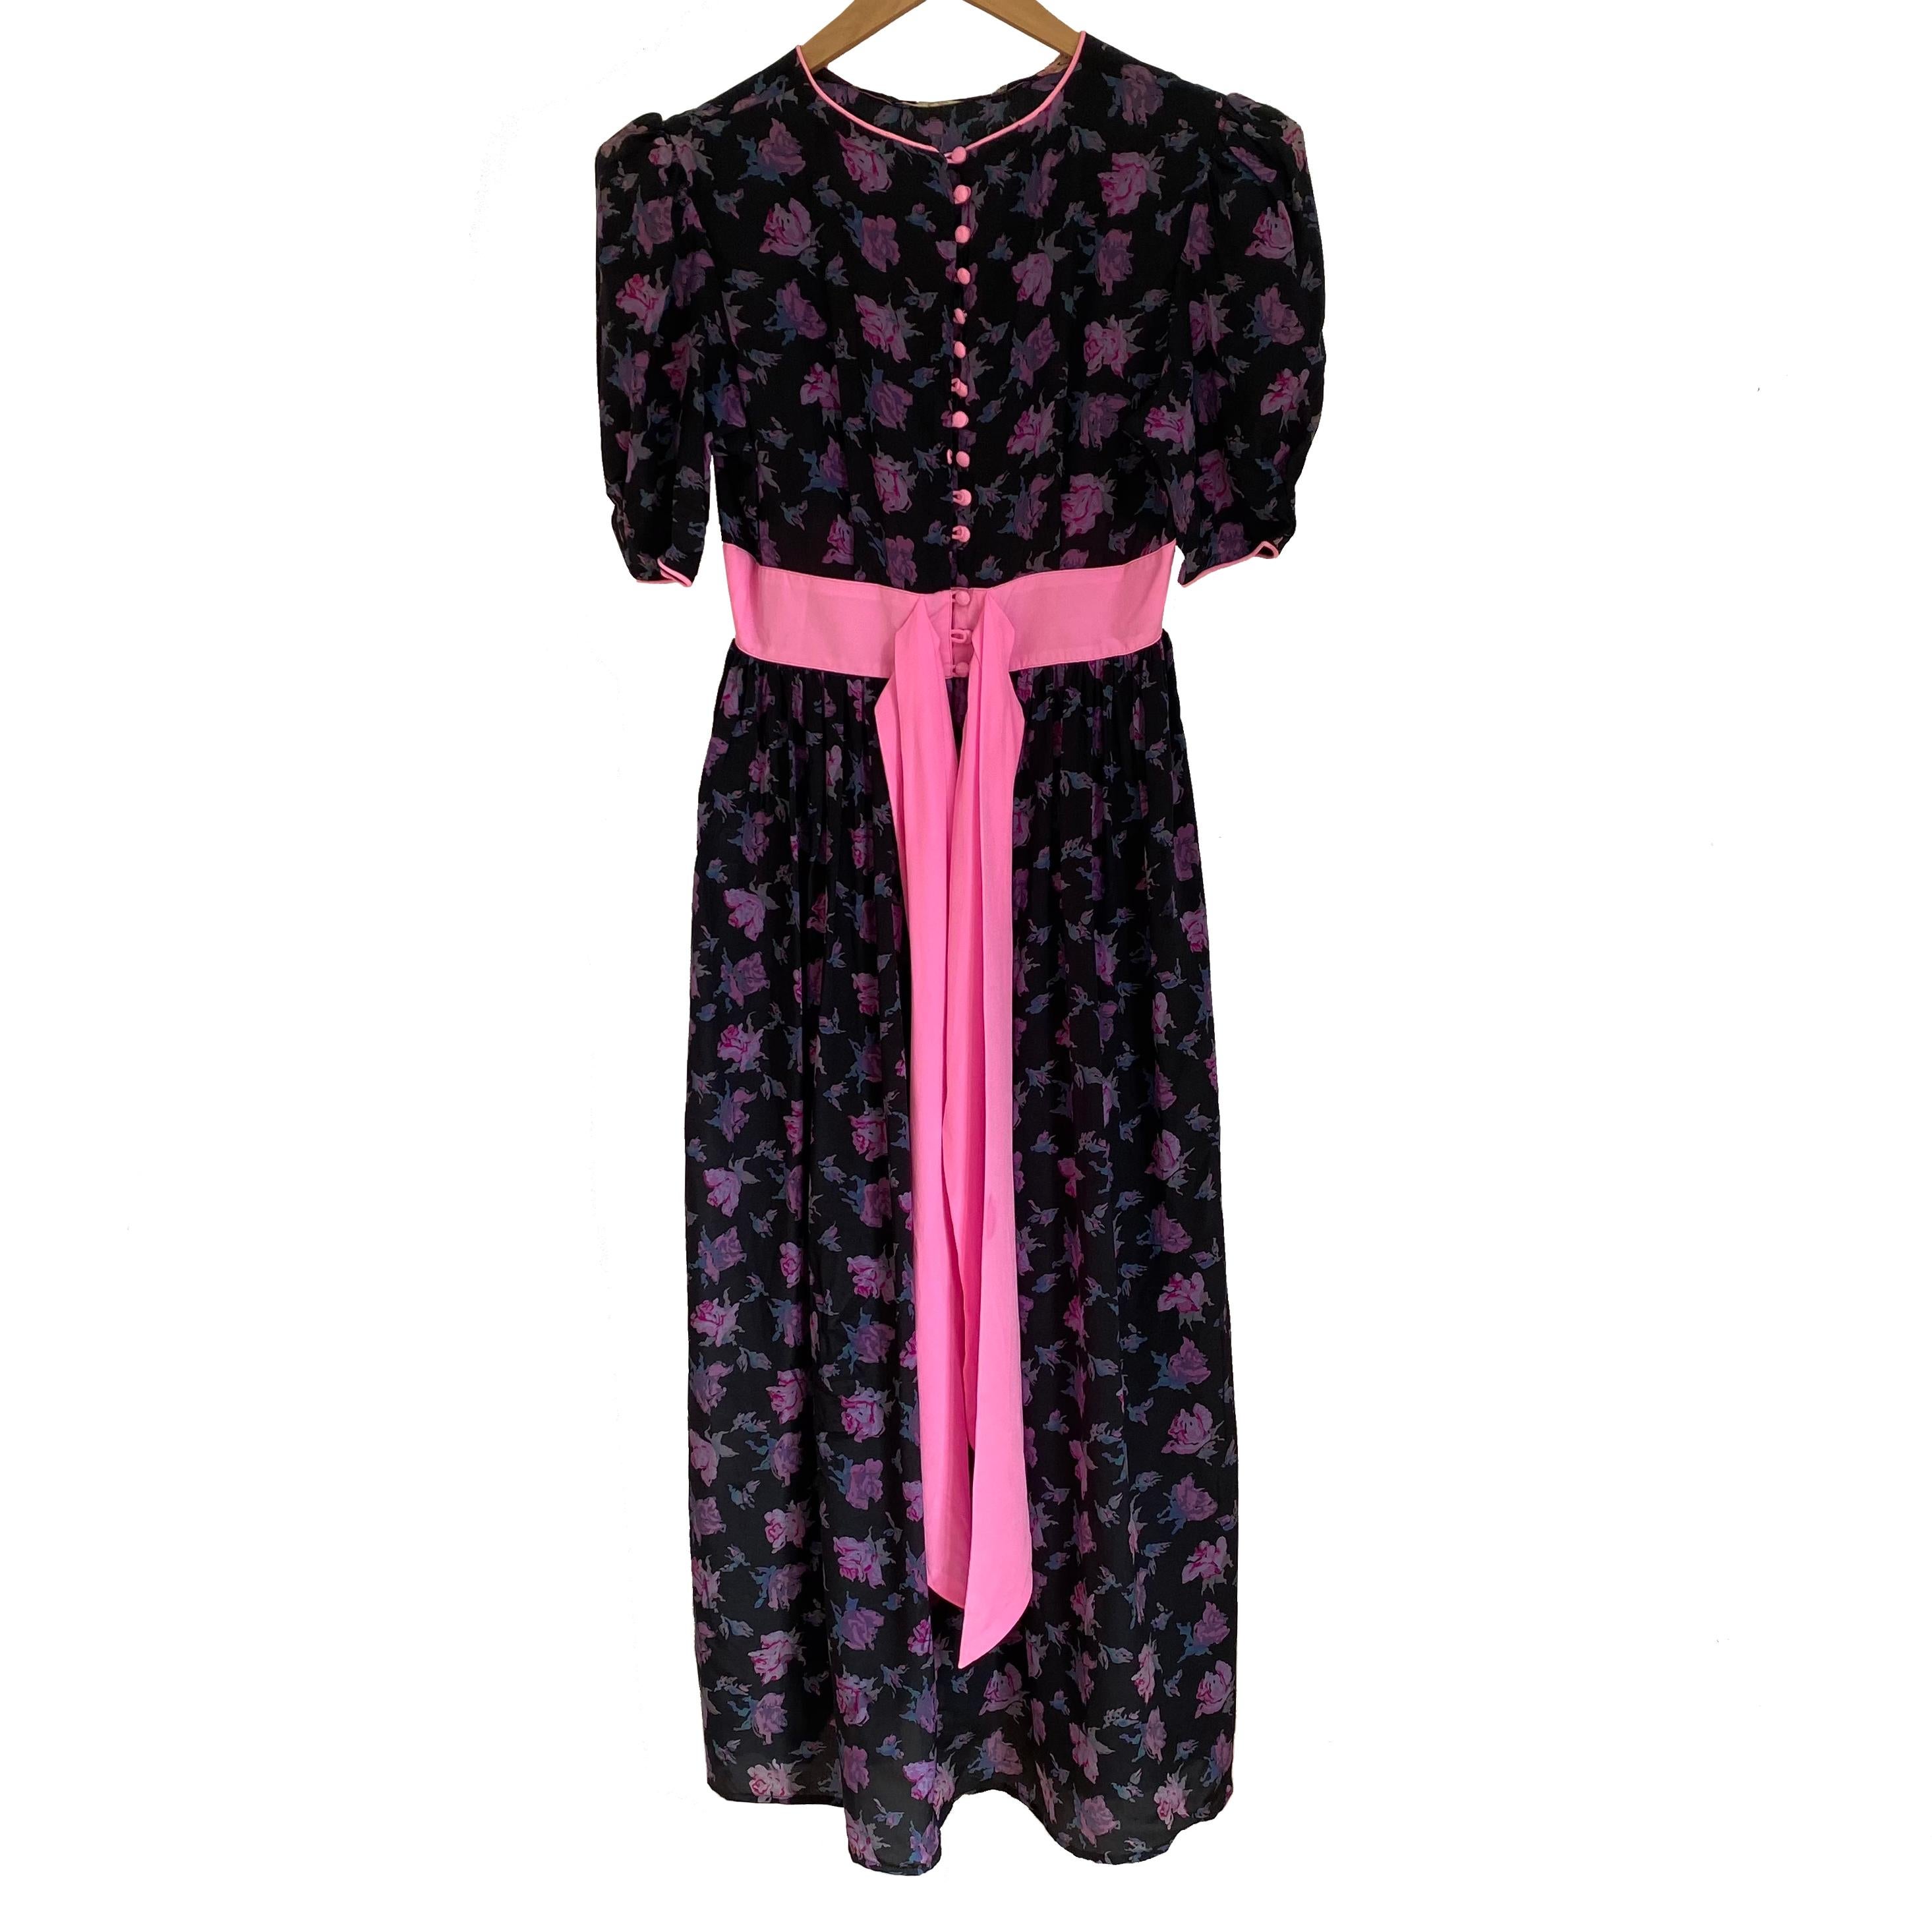 Pre-washed rosebud print black silk crepe FLORA KUNG princess dress For Sale 1